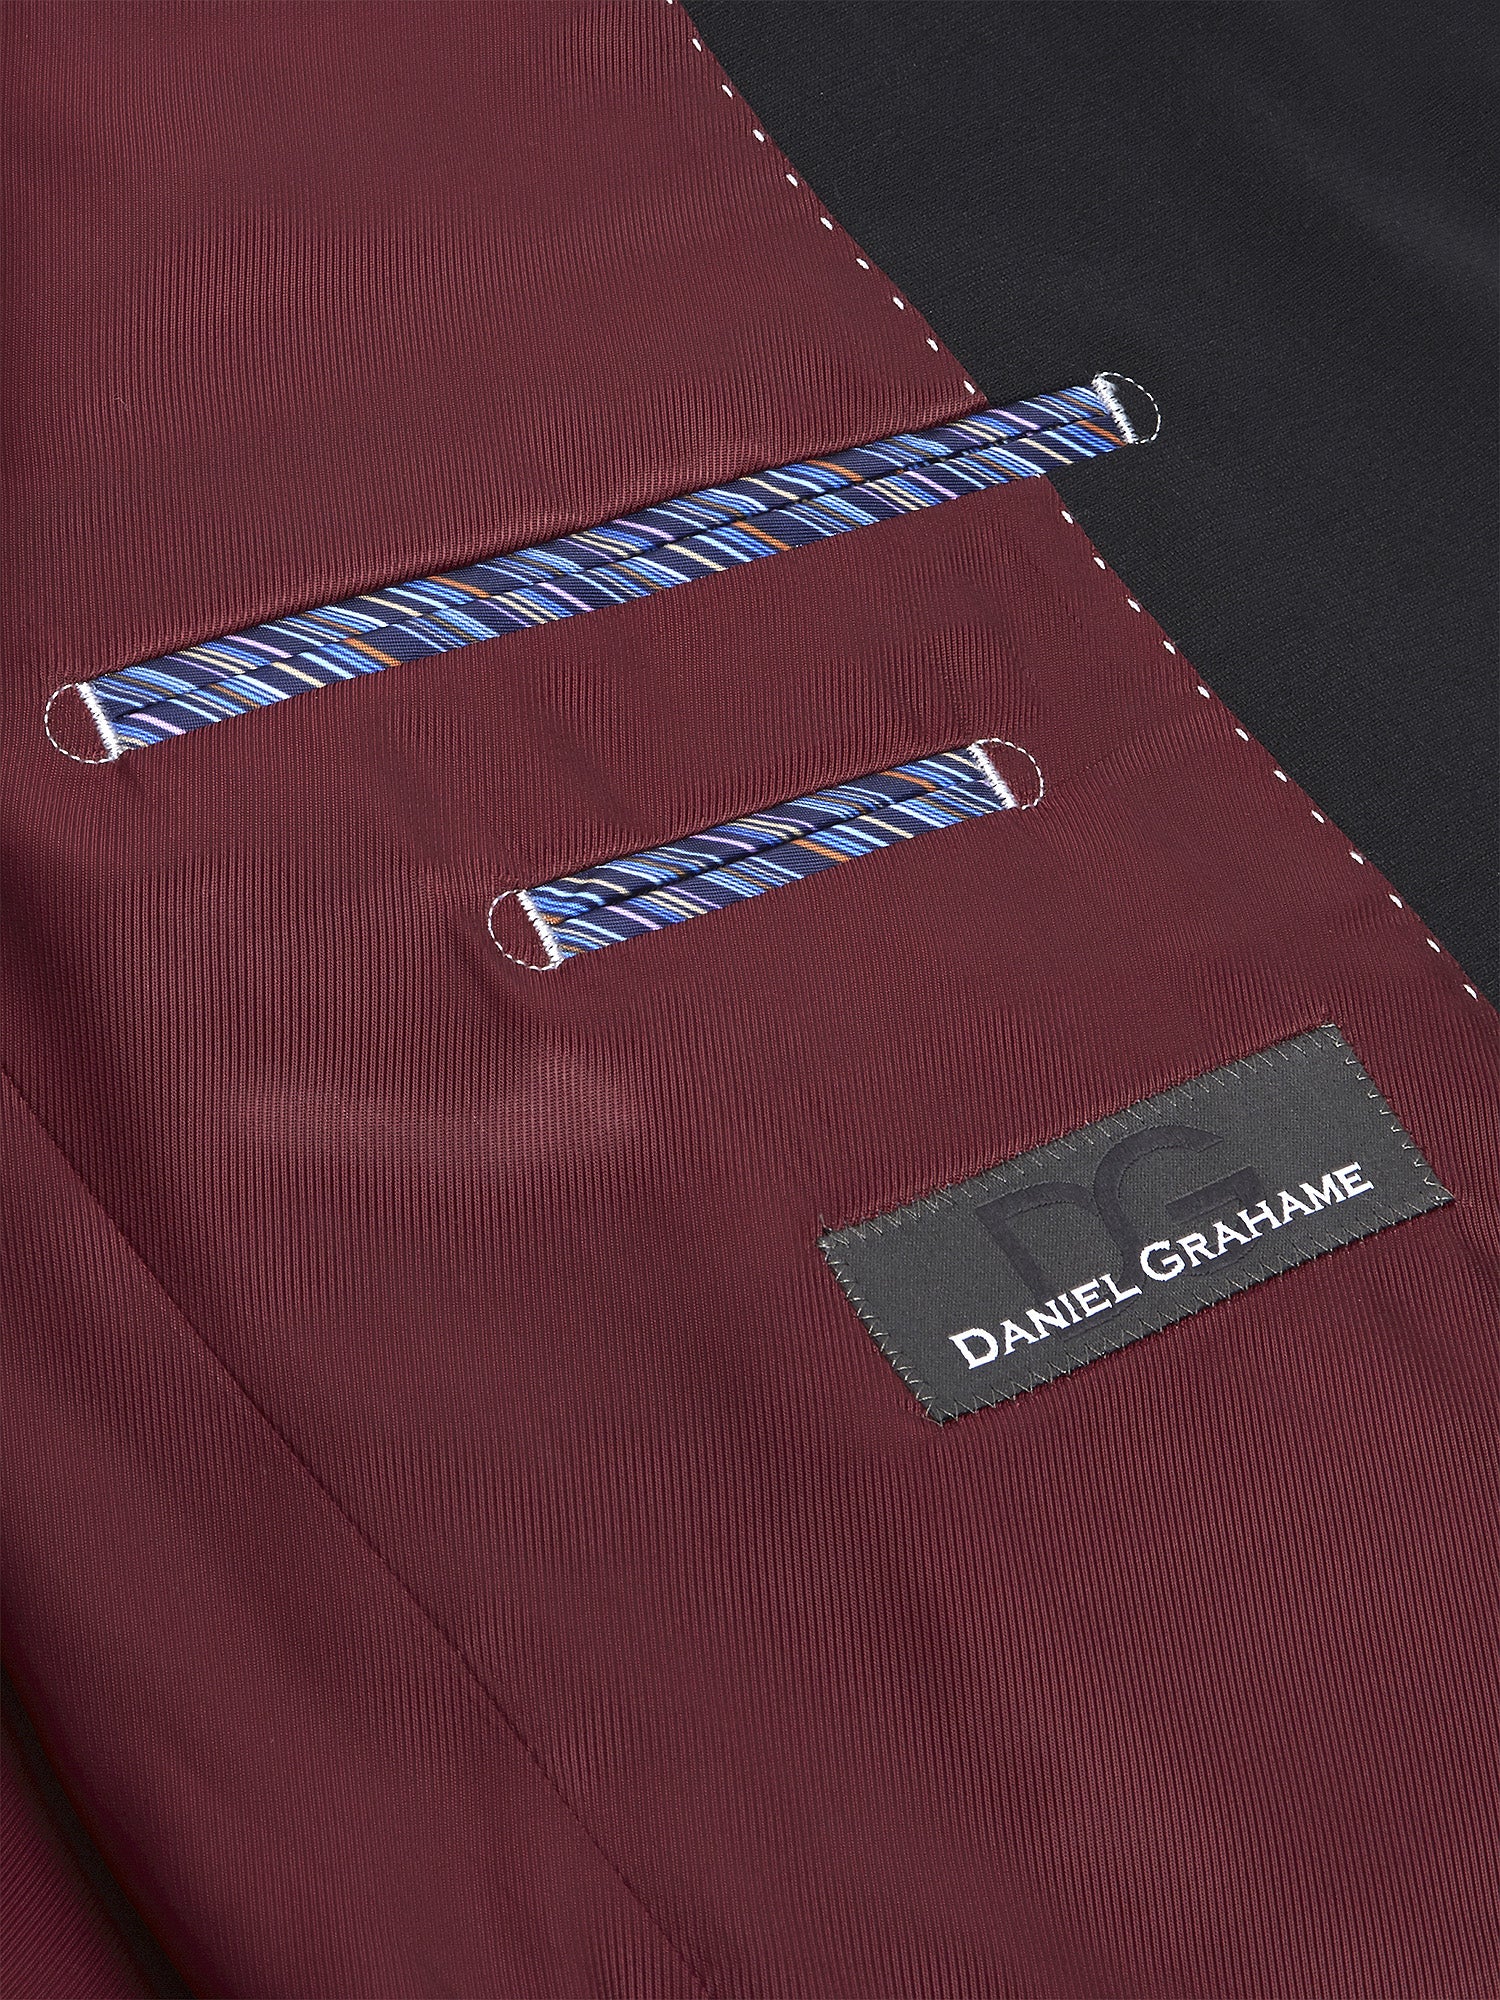 Daniel Grahame ... Dale Mix + Match Suit  - Black (030/00)